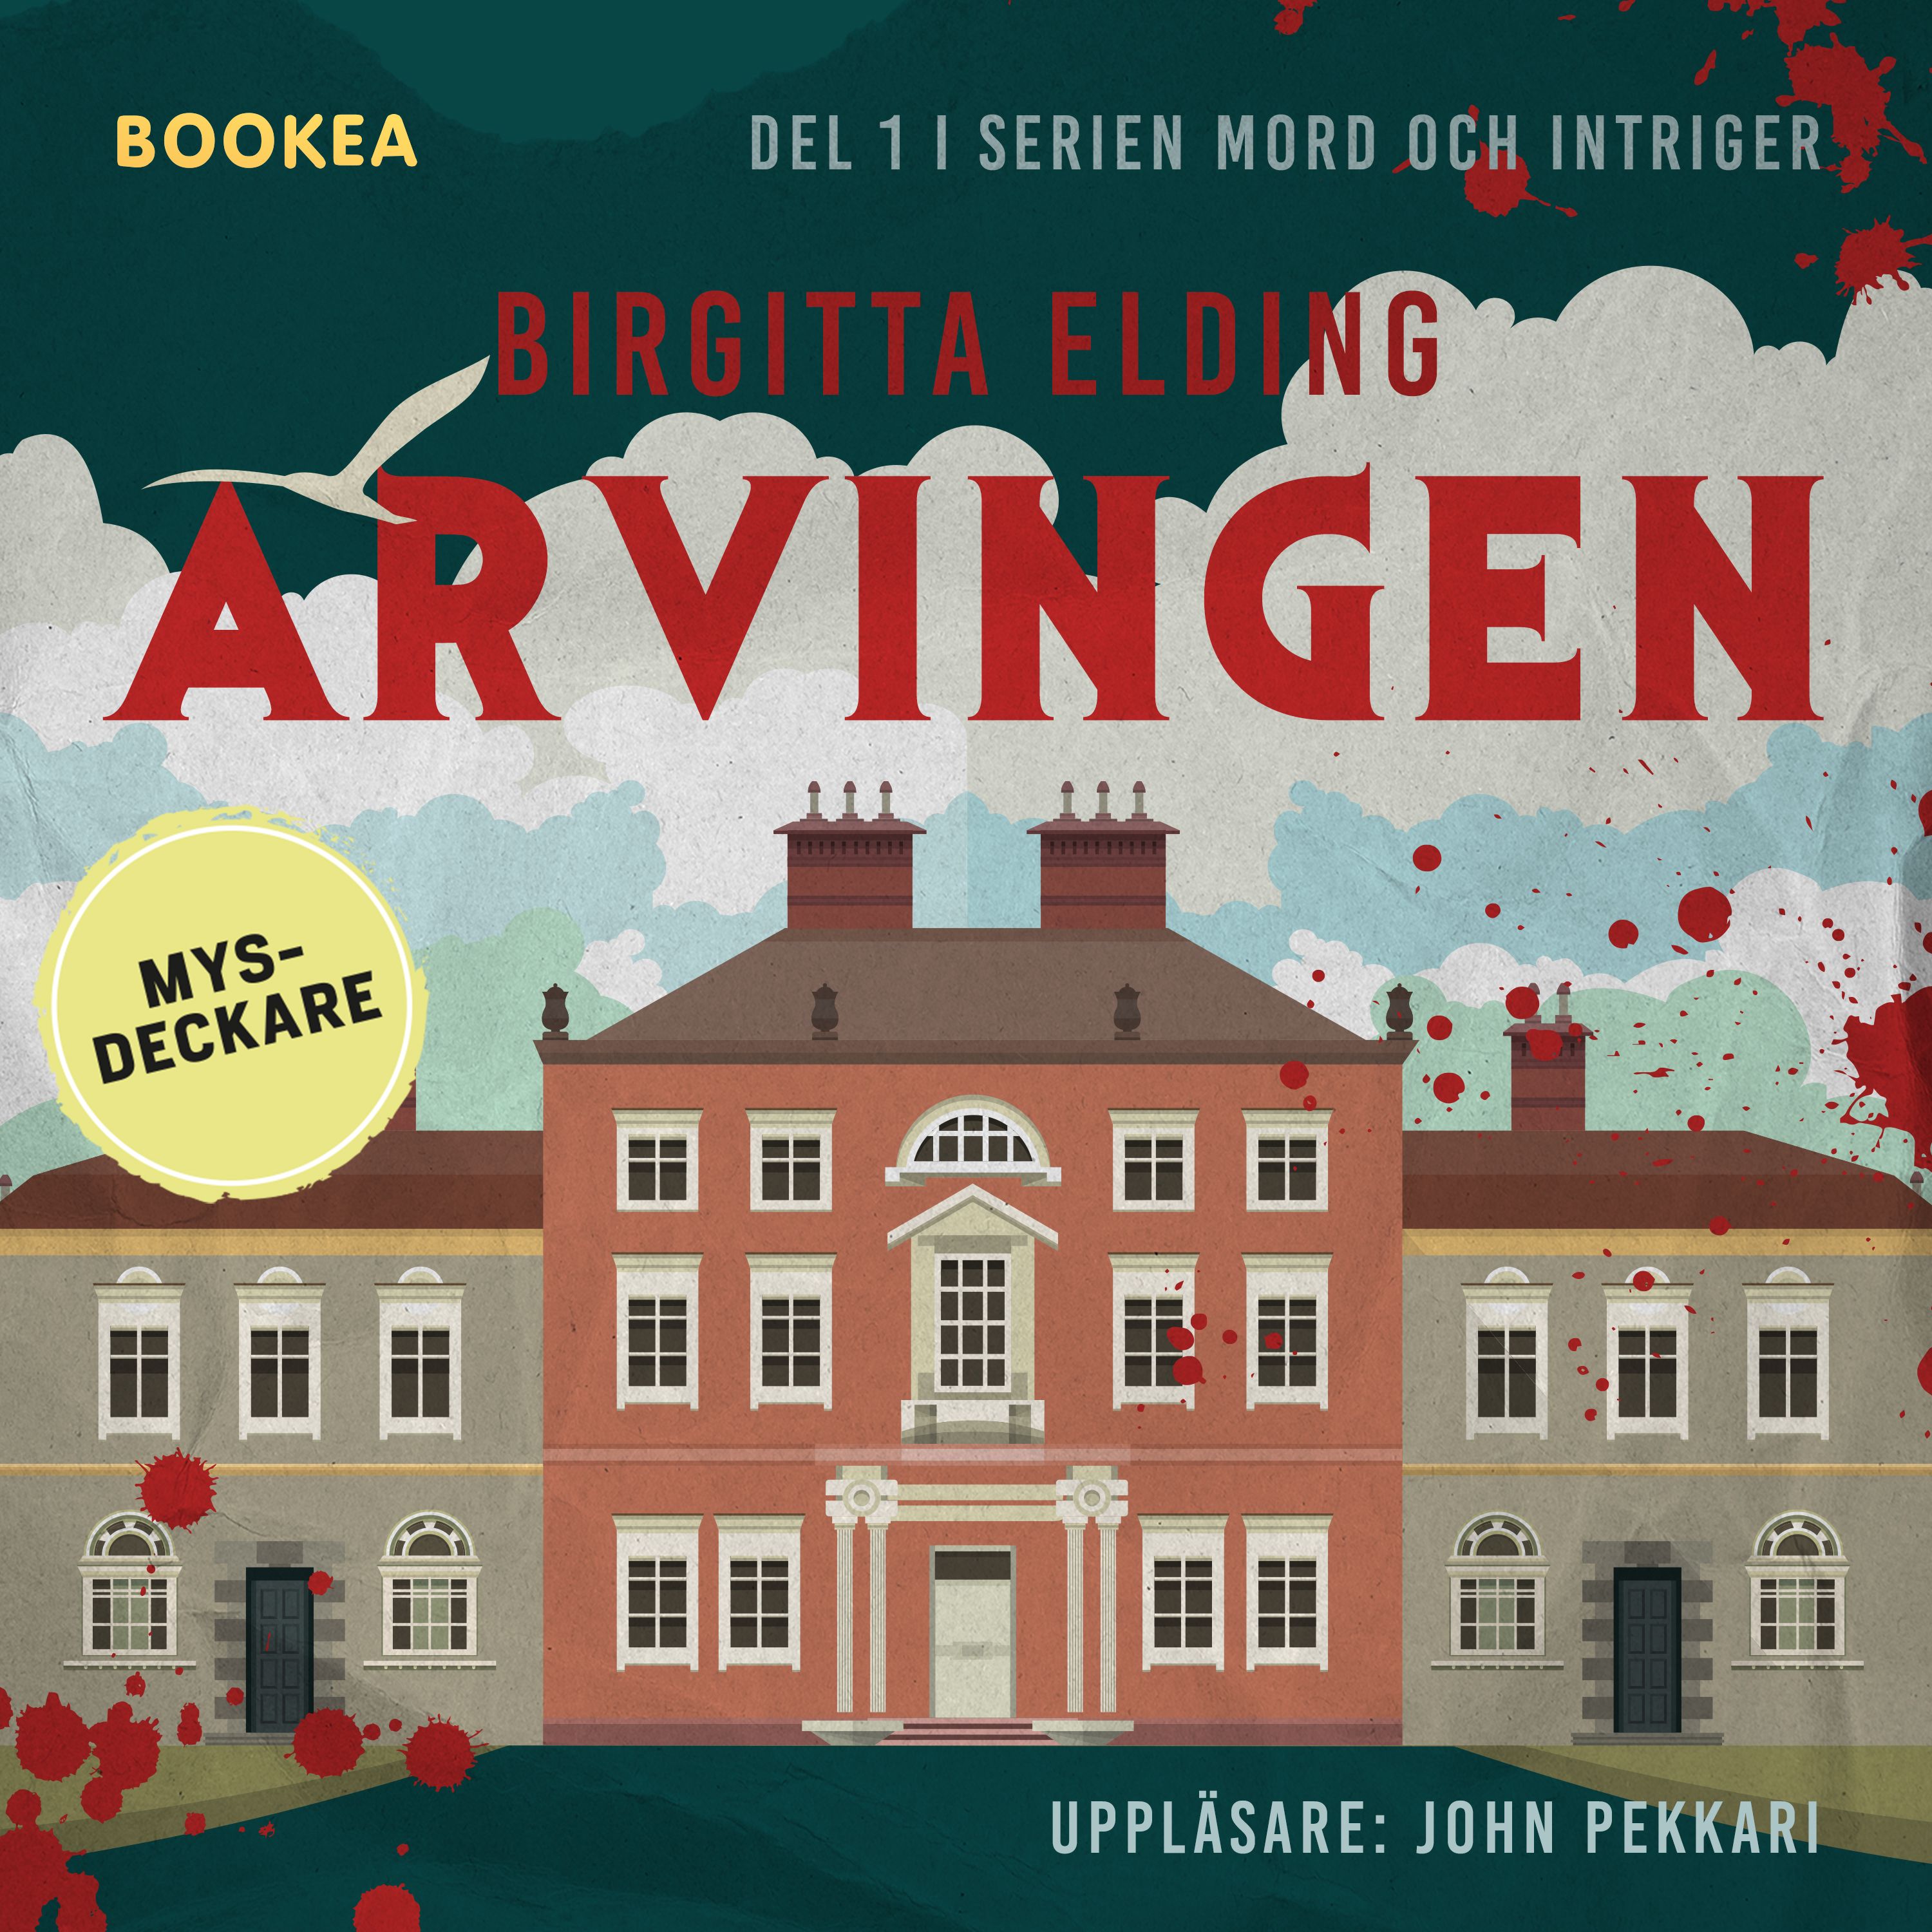 Arvingen, audiobook by Birgitta Elding